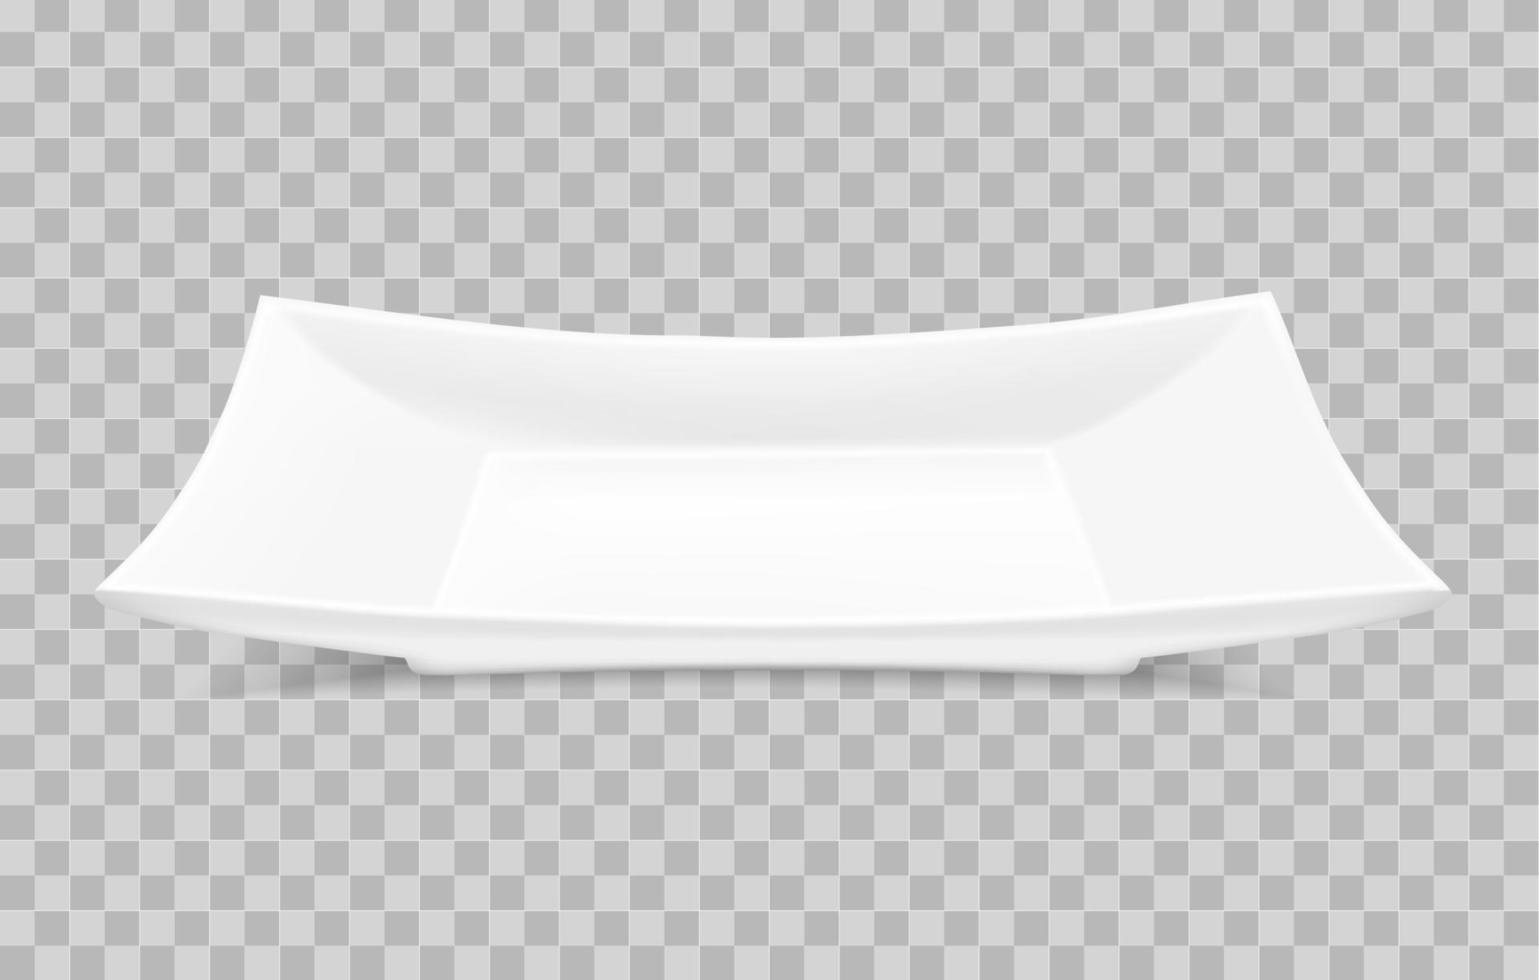 vektor realistische rechteckige weiße porzellanplatten auf einem transparenten hintergrund. Porzellanteller Draufsicht. Design für asiatische Küche